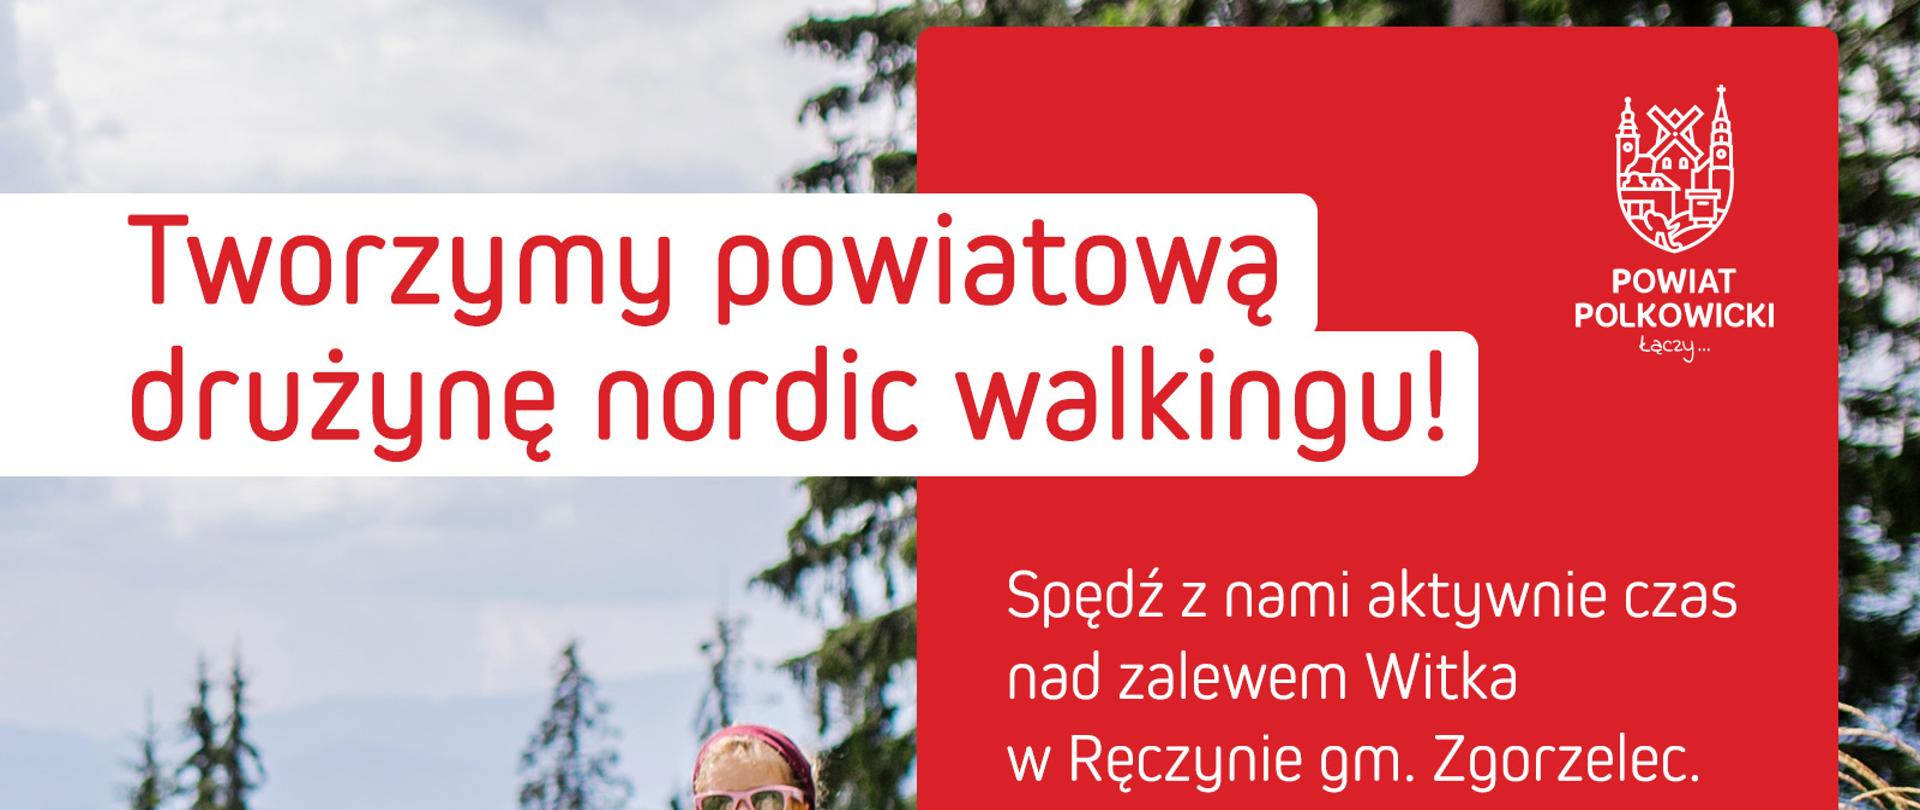 Kobieta, mężczyzna i dwoje dzieci chodzą po górach z kijami do nordic walking 